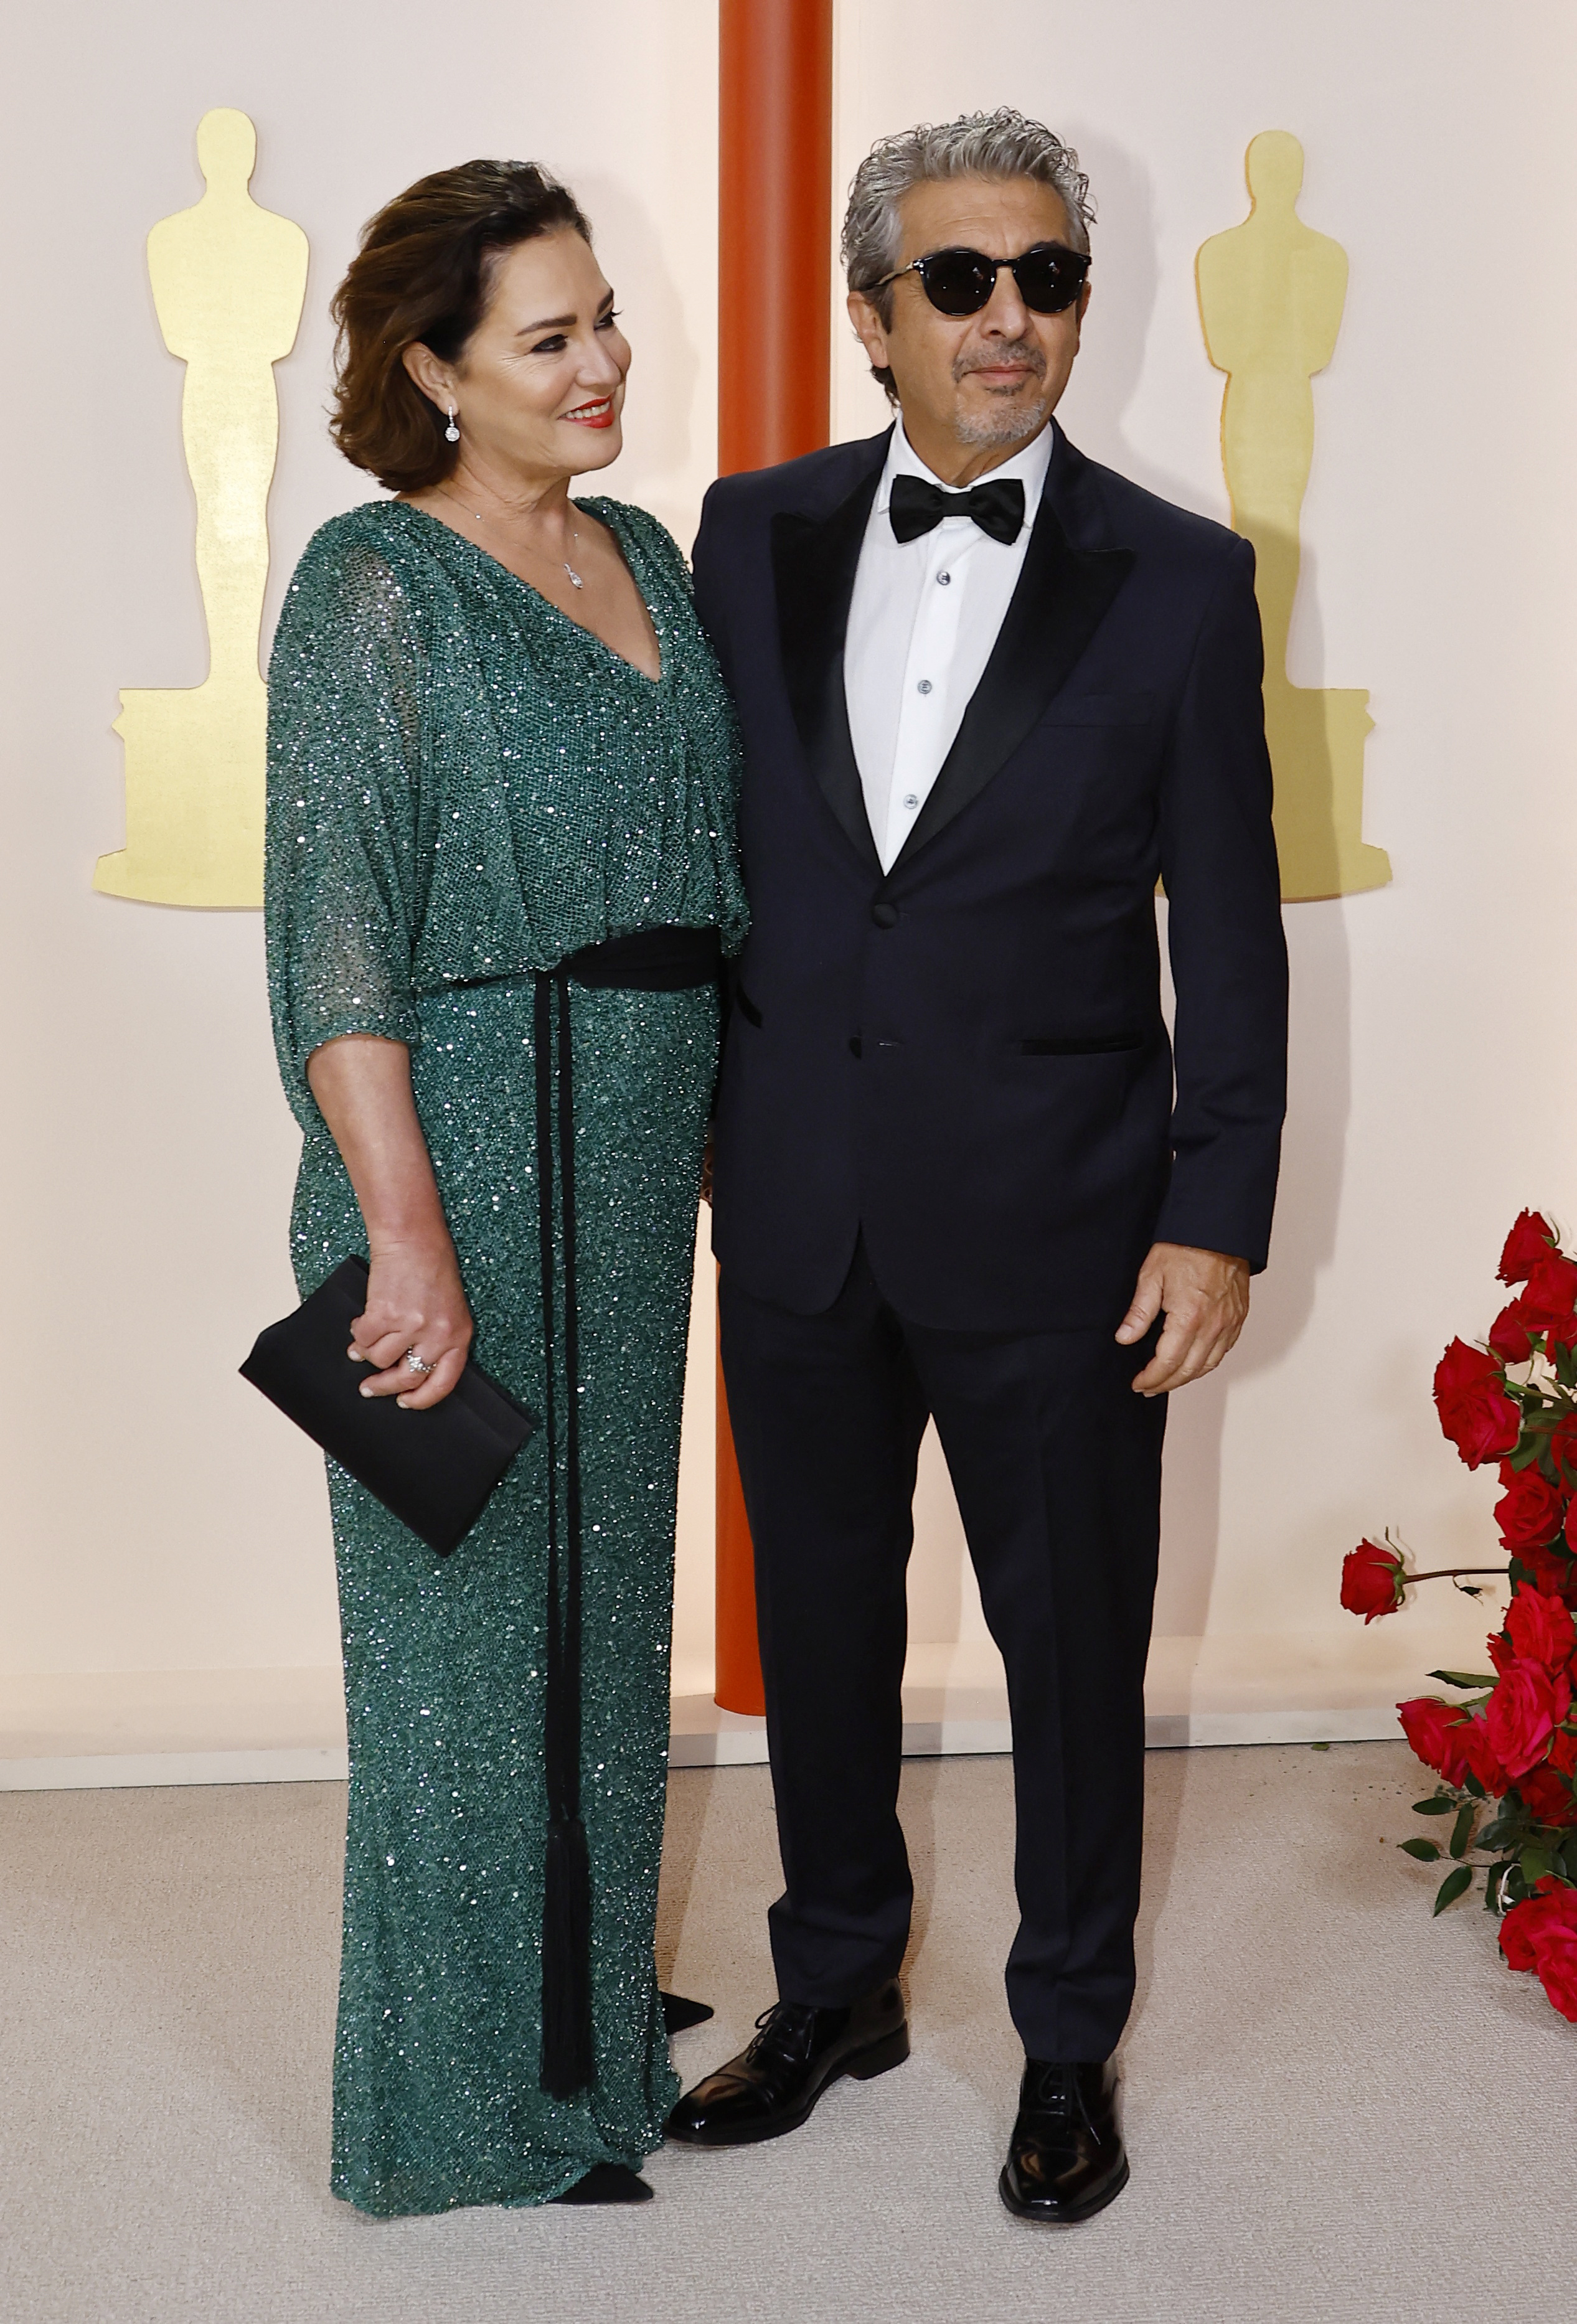 Ricardo Darin y Florencia Bas estuvieron "a la altura de la circunstancias" y "muy elegantes" según los expertos durante su paso por los Premios Oscar.  REUTERS/Eric Gaillard